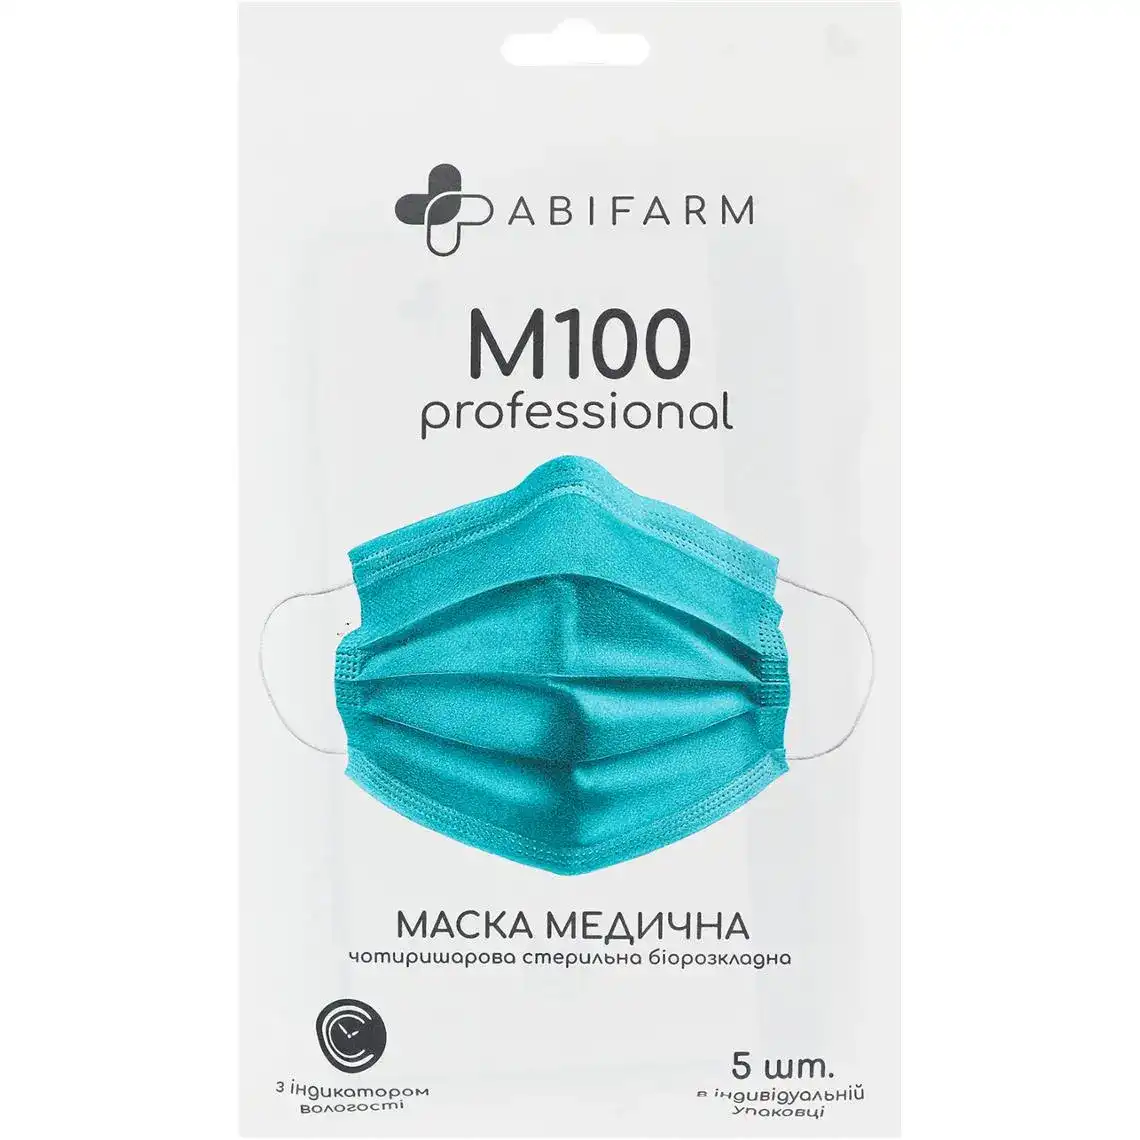 Маска медична Abifarm  M100 Professional чотиришарова стерильна 5шт